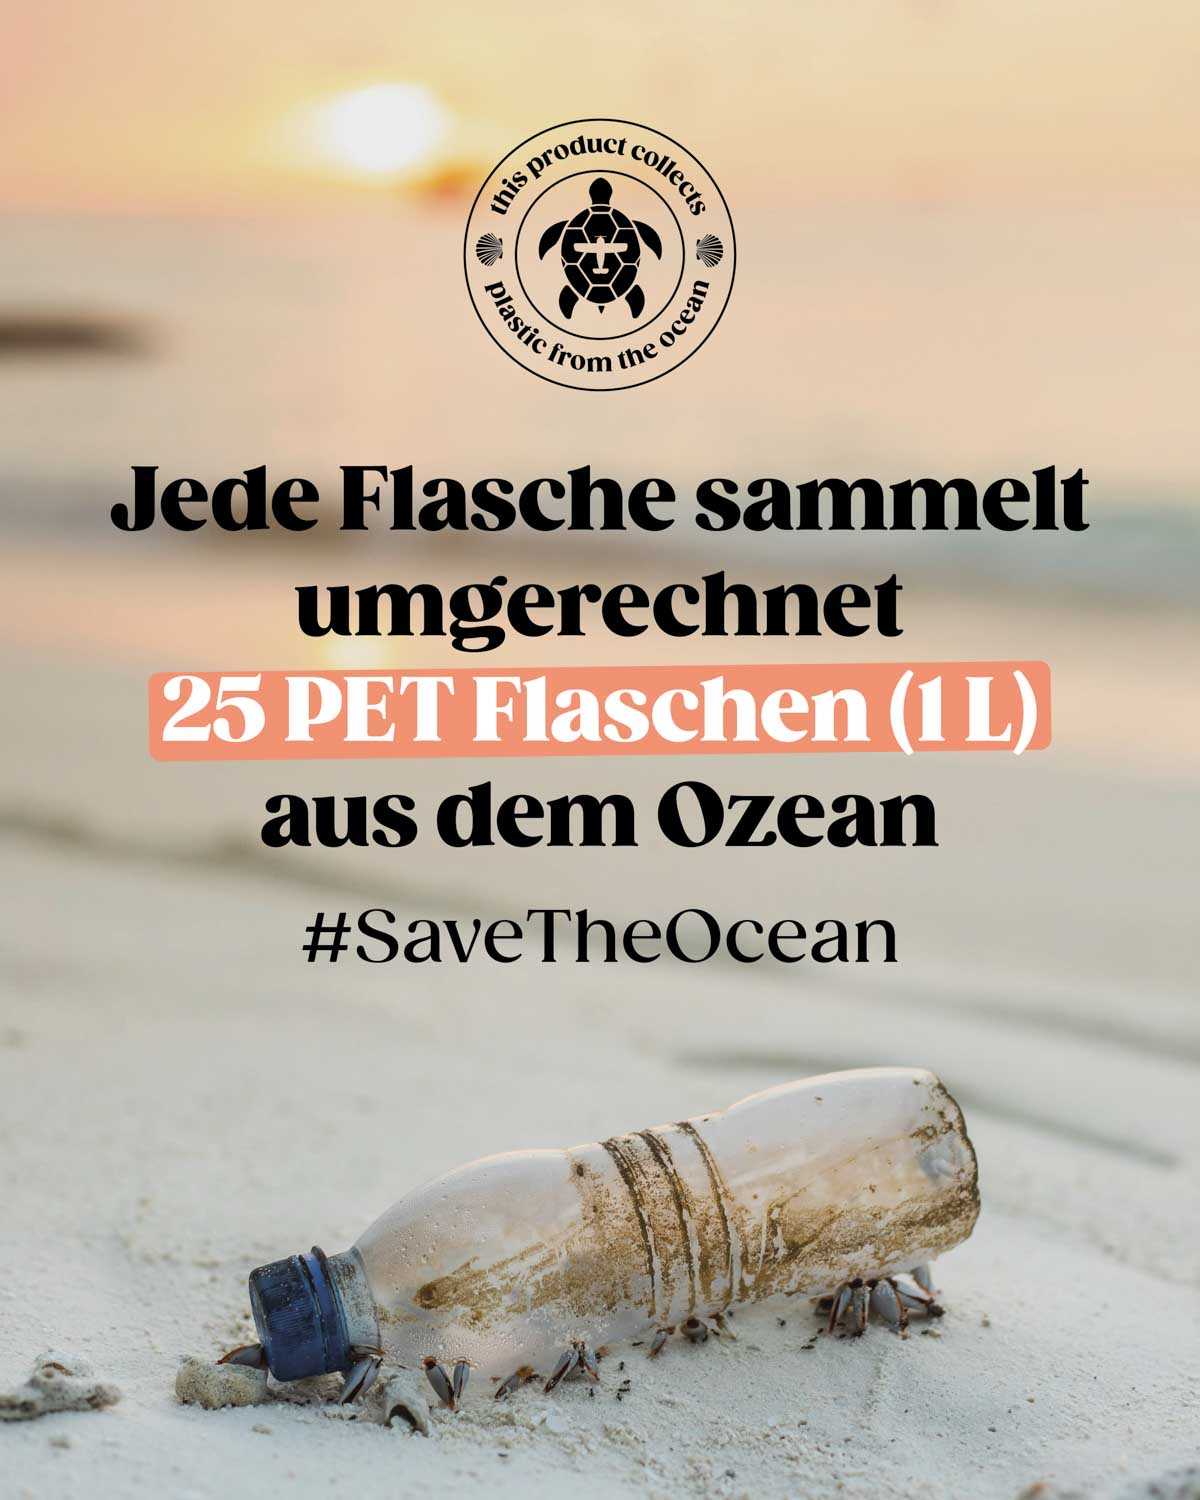 Eine angespülte Plastikflasche am Strand als Symbol der Umweltverschmutzung unserer Meere durch unseren Plastikmüll. Mit unserer Marke BIRDS arbeiten wir zusammen mit Plastic Free Planet und holen pro Flasche umgerechnet 25 PET Flaschen aus dem Ozean. 